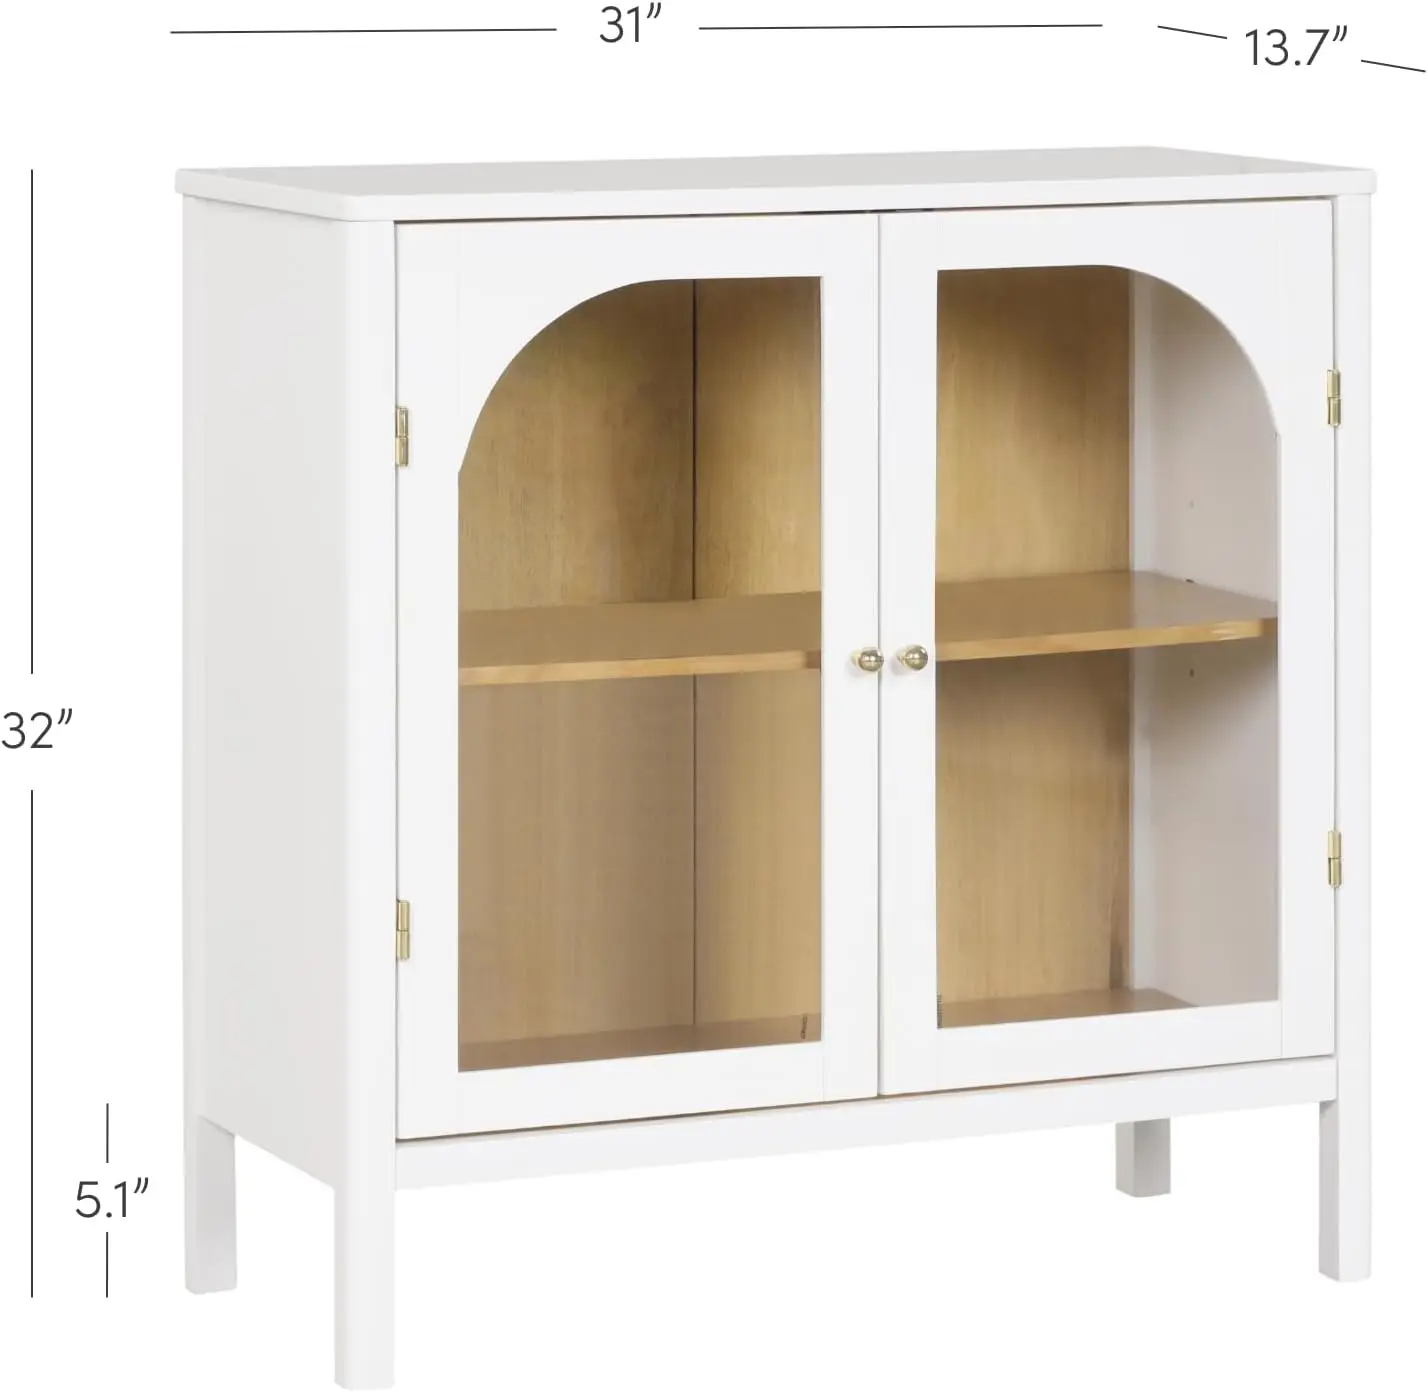 Armário de madeira estilo nórdico, aparador moderno, livre, para corredor, entrada, sala de jantar, sala de jantar